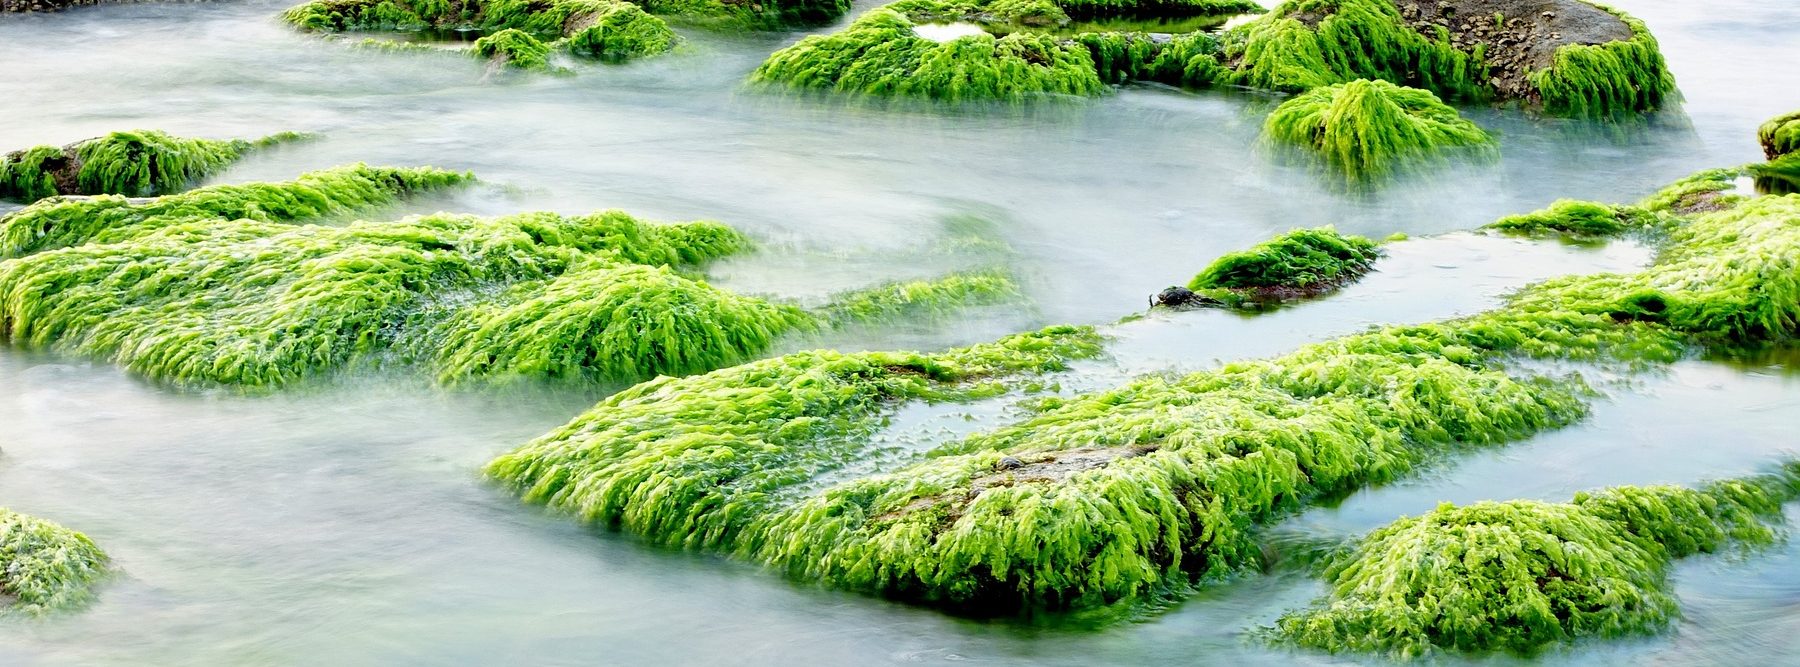 Las algas estuvieron en el inicio de la vida en la Tierra.